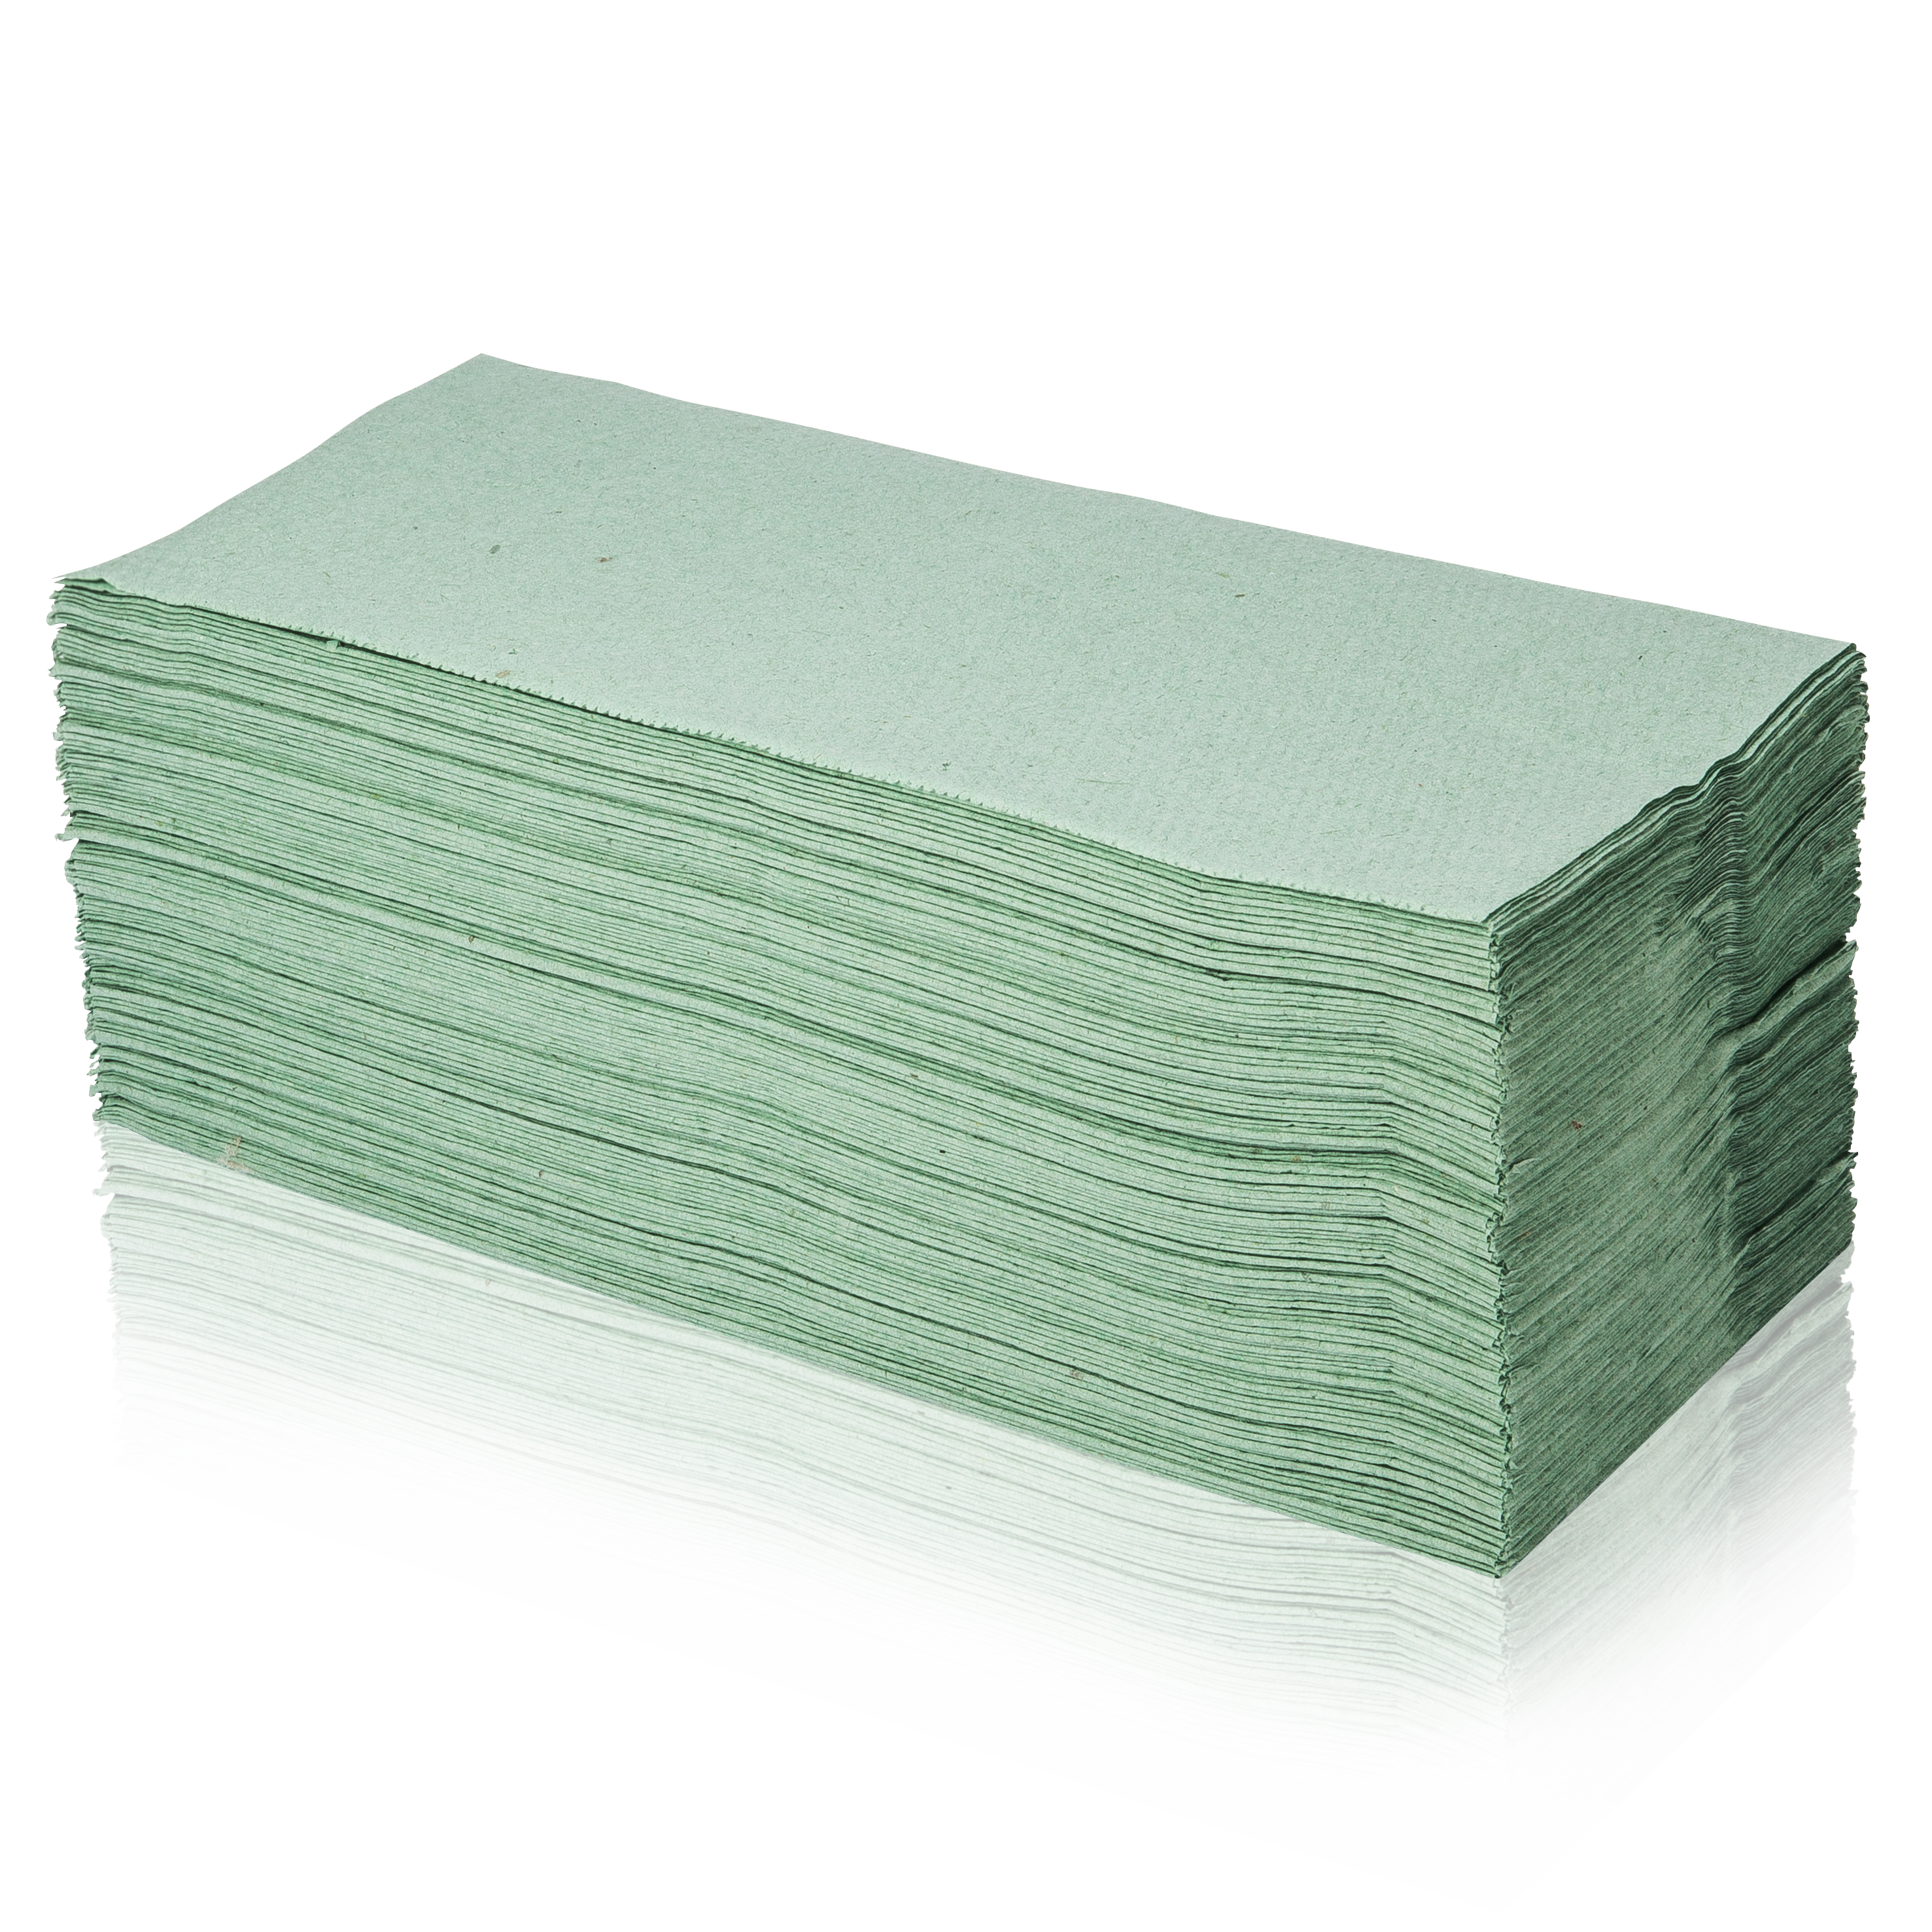  Papier-Falthandtücher grün 1 Pack (250 Stk.)